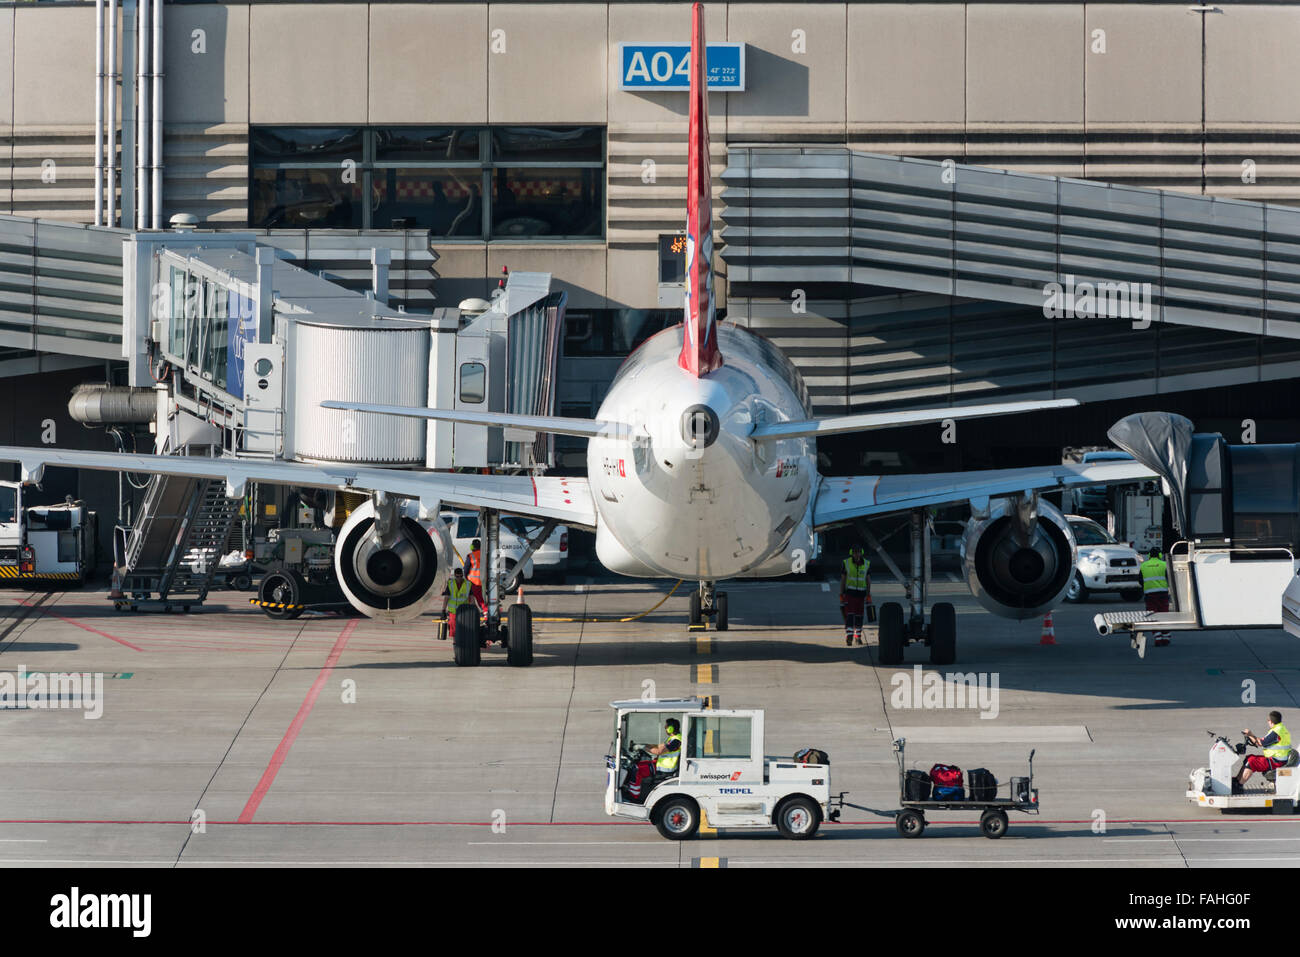 Ein Airbus A320 der Swiss Charter Airline Edelweiss ist am Tor A04 Zürich  Flughafen geparkt Stockfotografie - Alamy